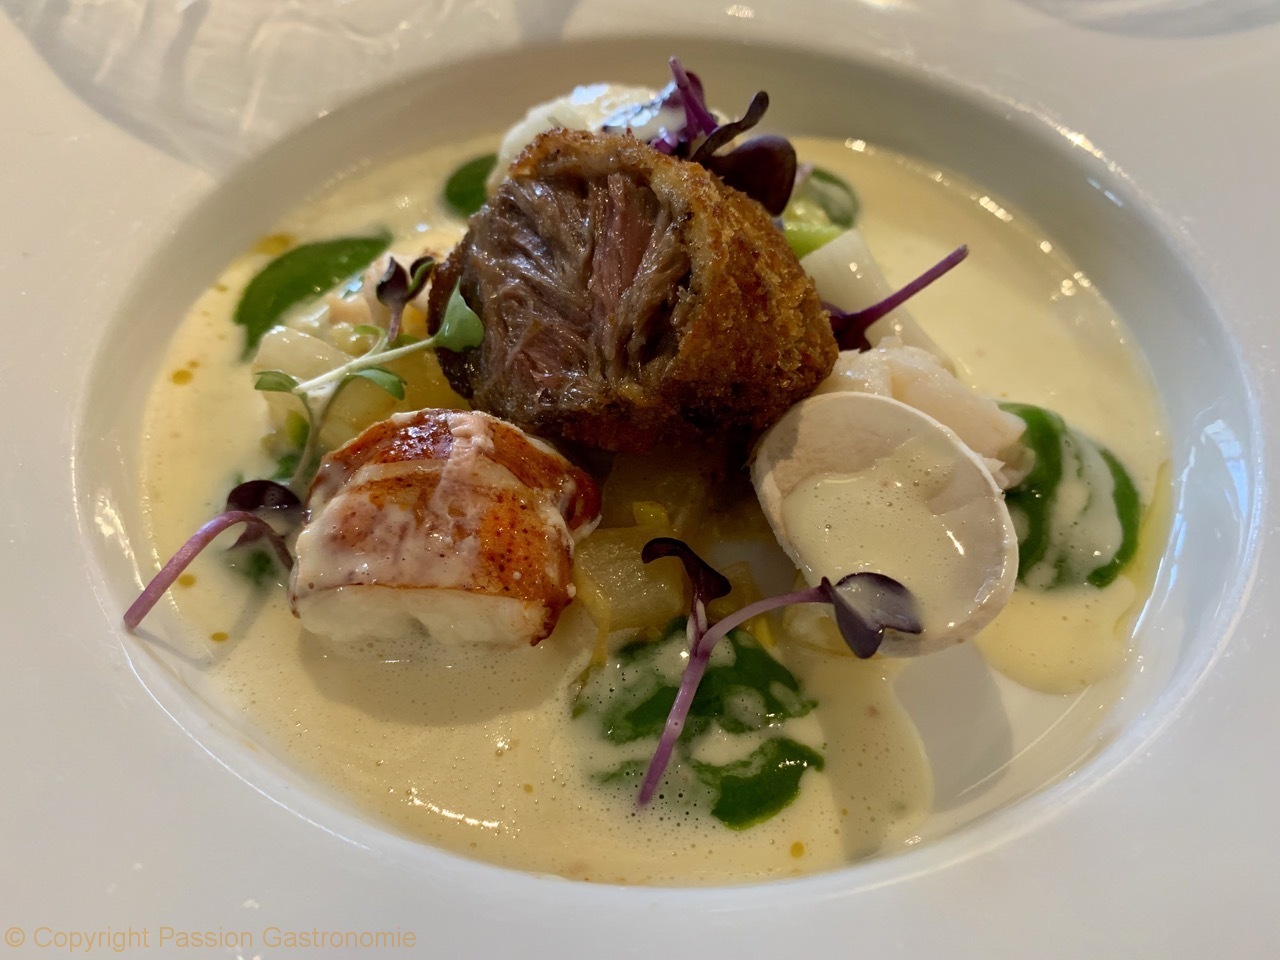 Restaurant Attablez-Vous - Joue de cochon ibérique et homard fondant, beurre citronné, oignons et persil